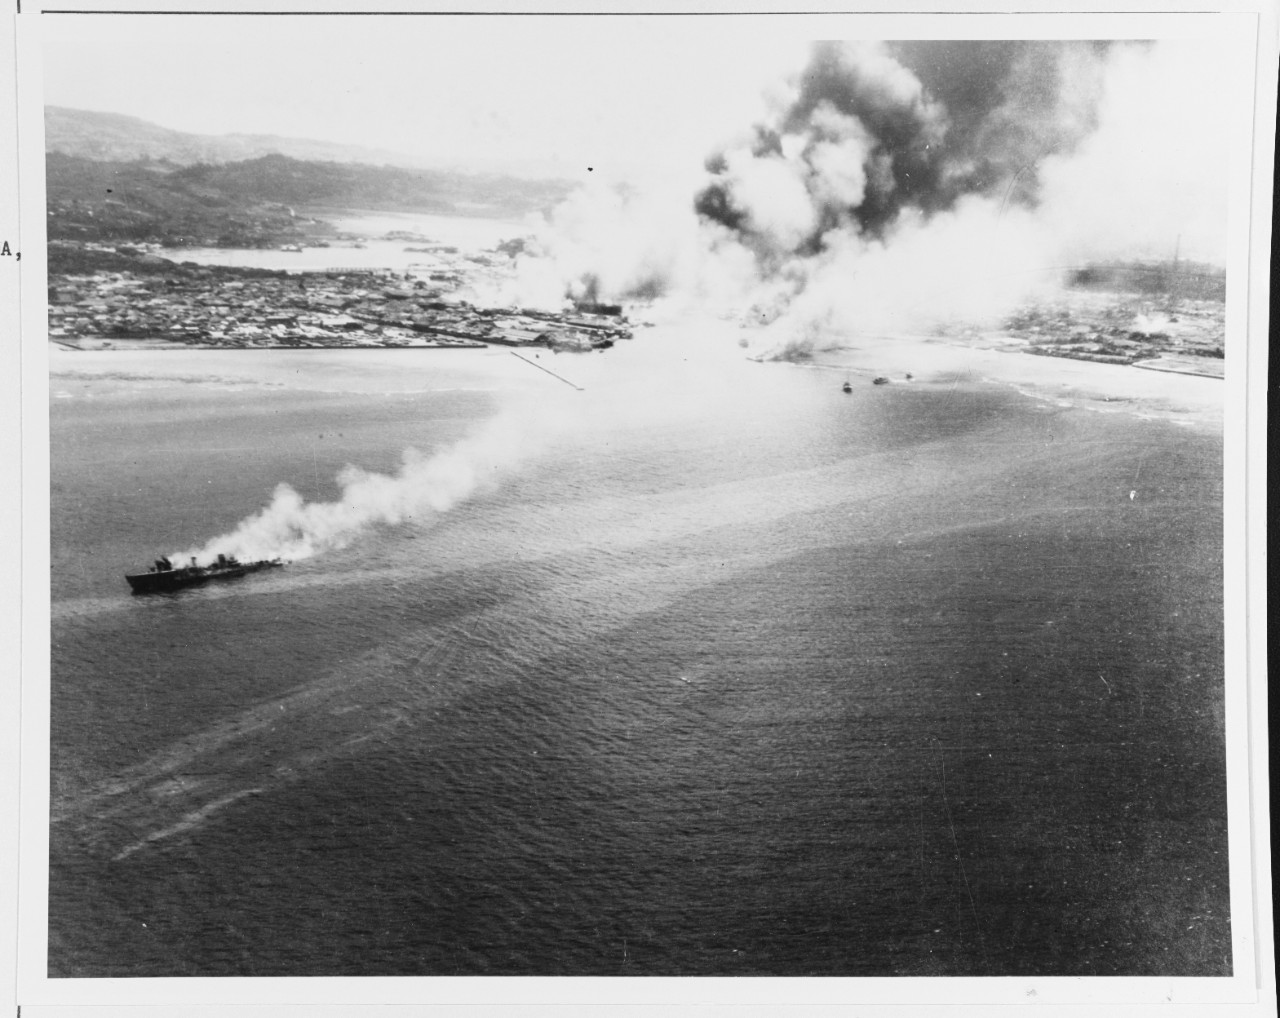 Naha Harbor, Okinawa, 10 October 1944.